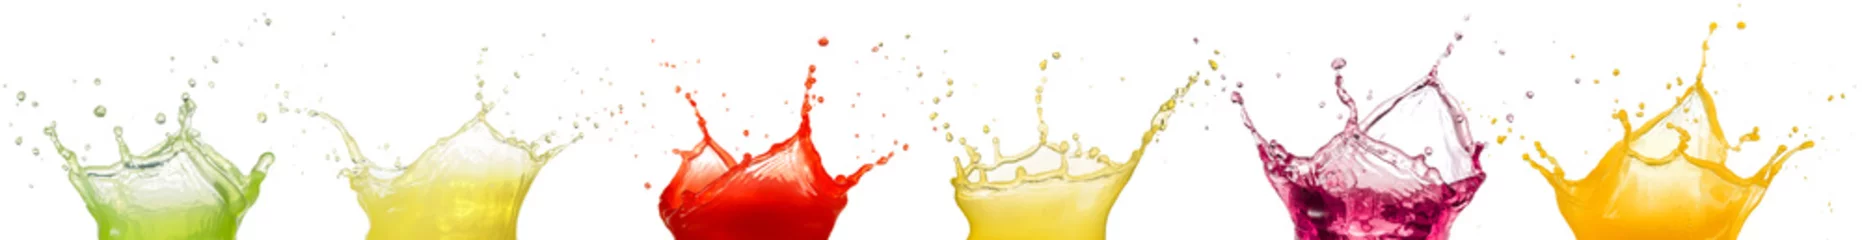 Acrylic prints Juice fruit juice splashes isolated on white background